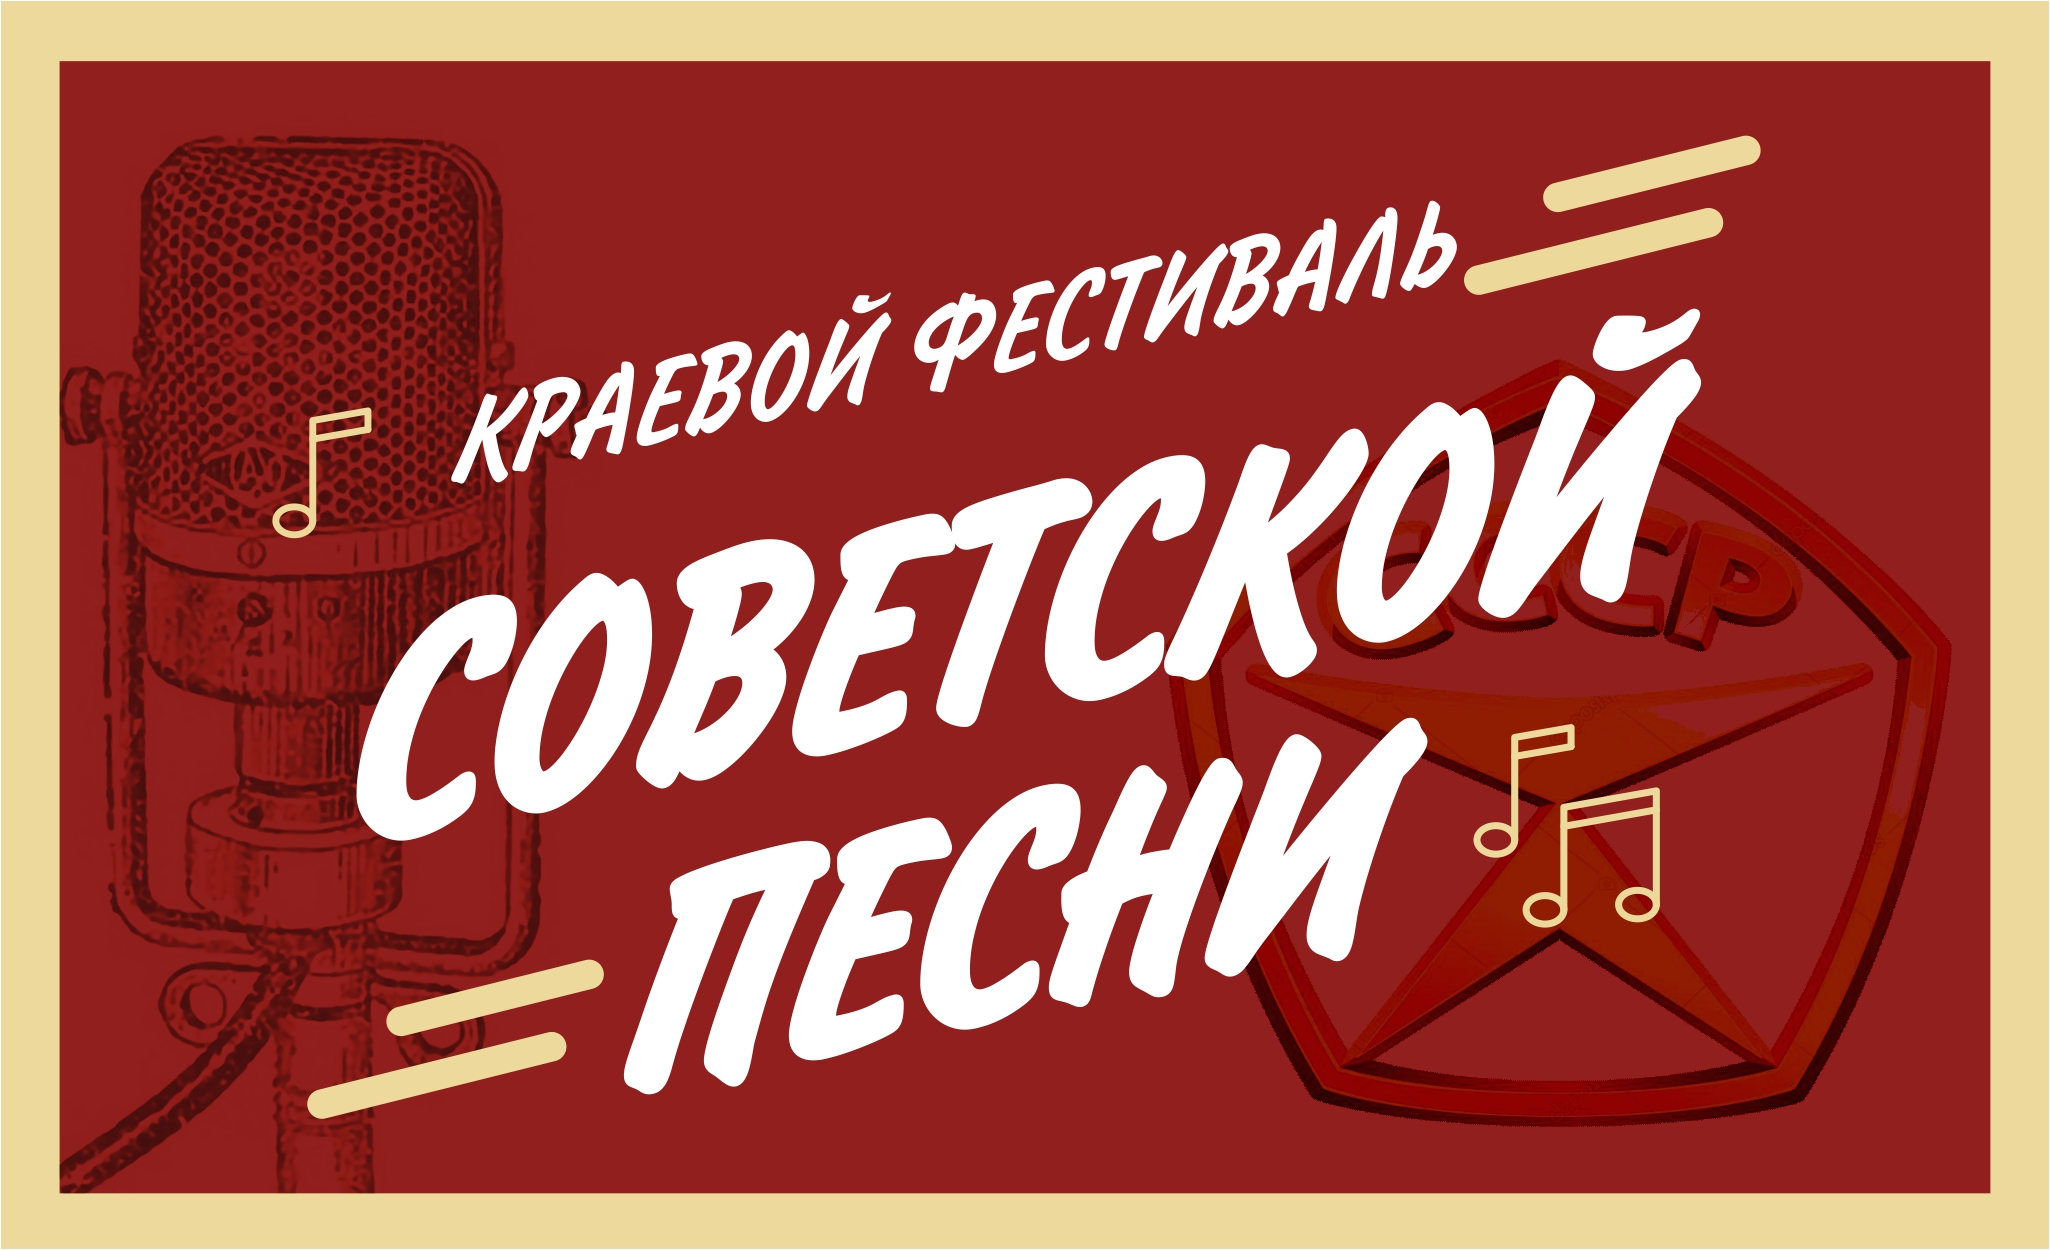 Завершился прием заявок на участие в краевом фестивале советской песни, который состоится в селе Мамонтово